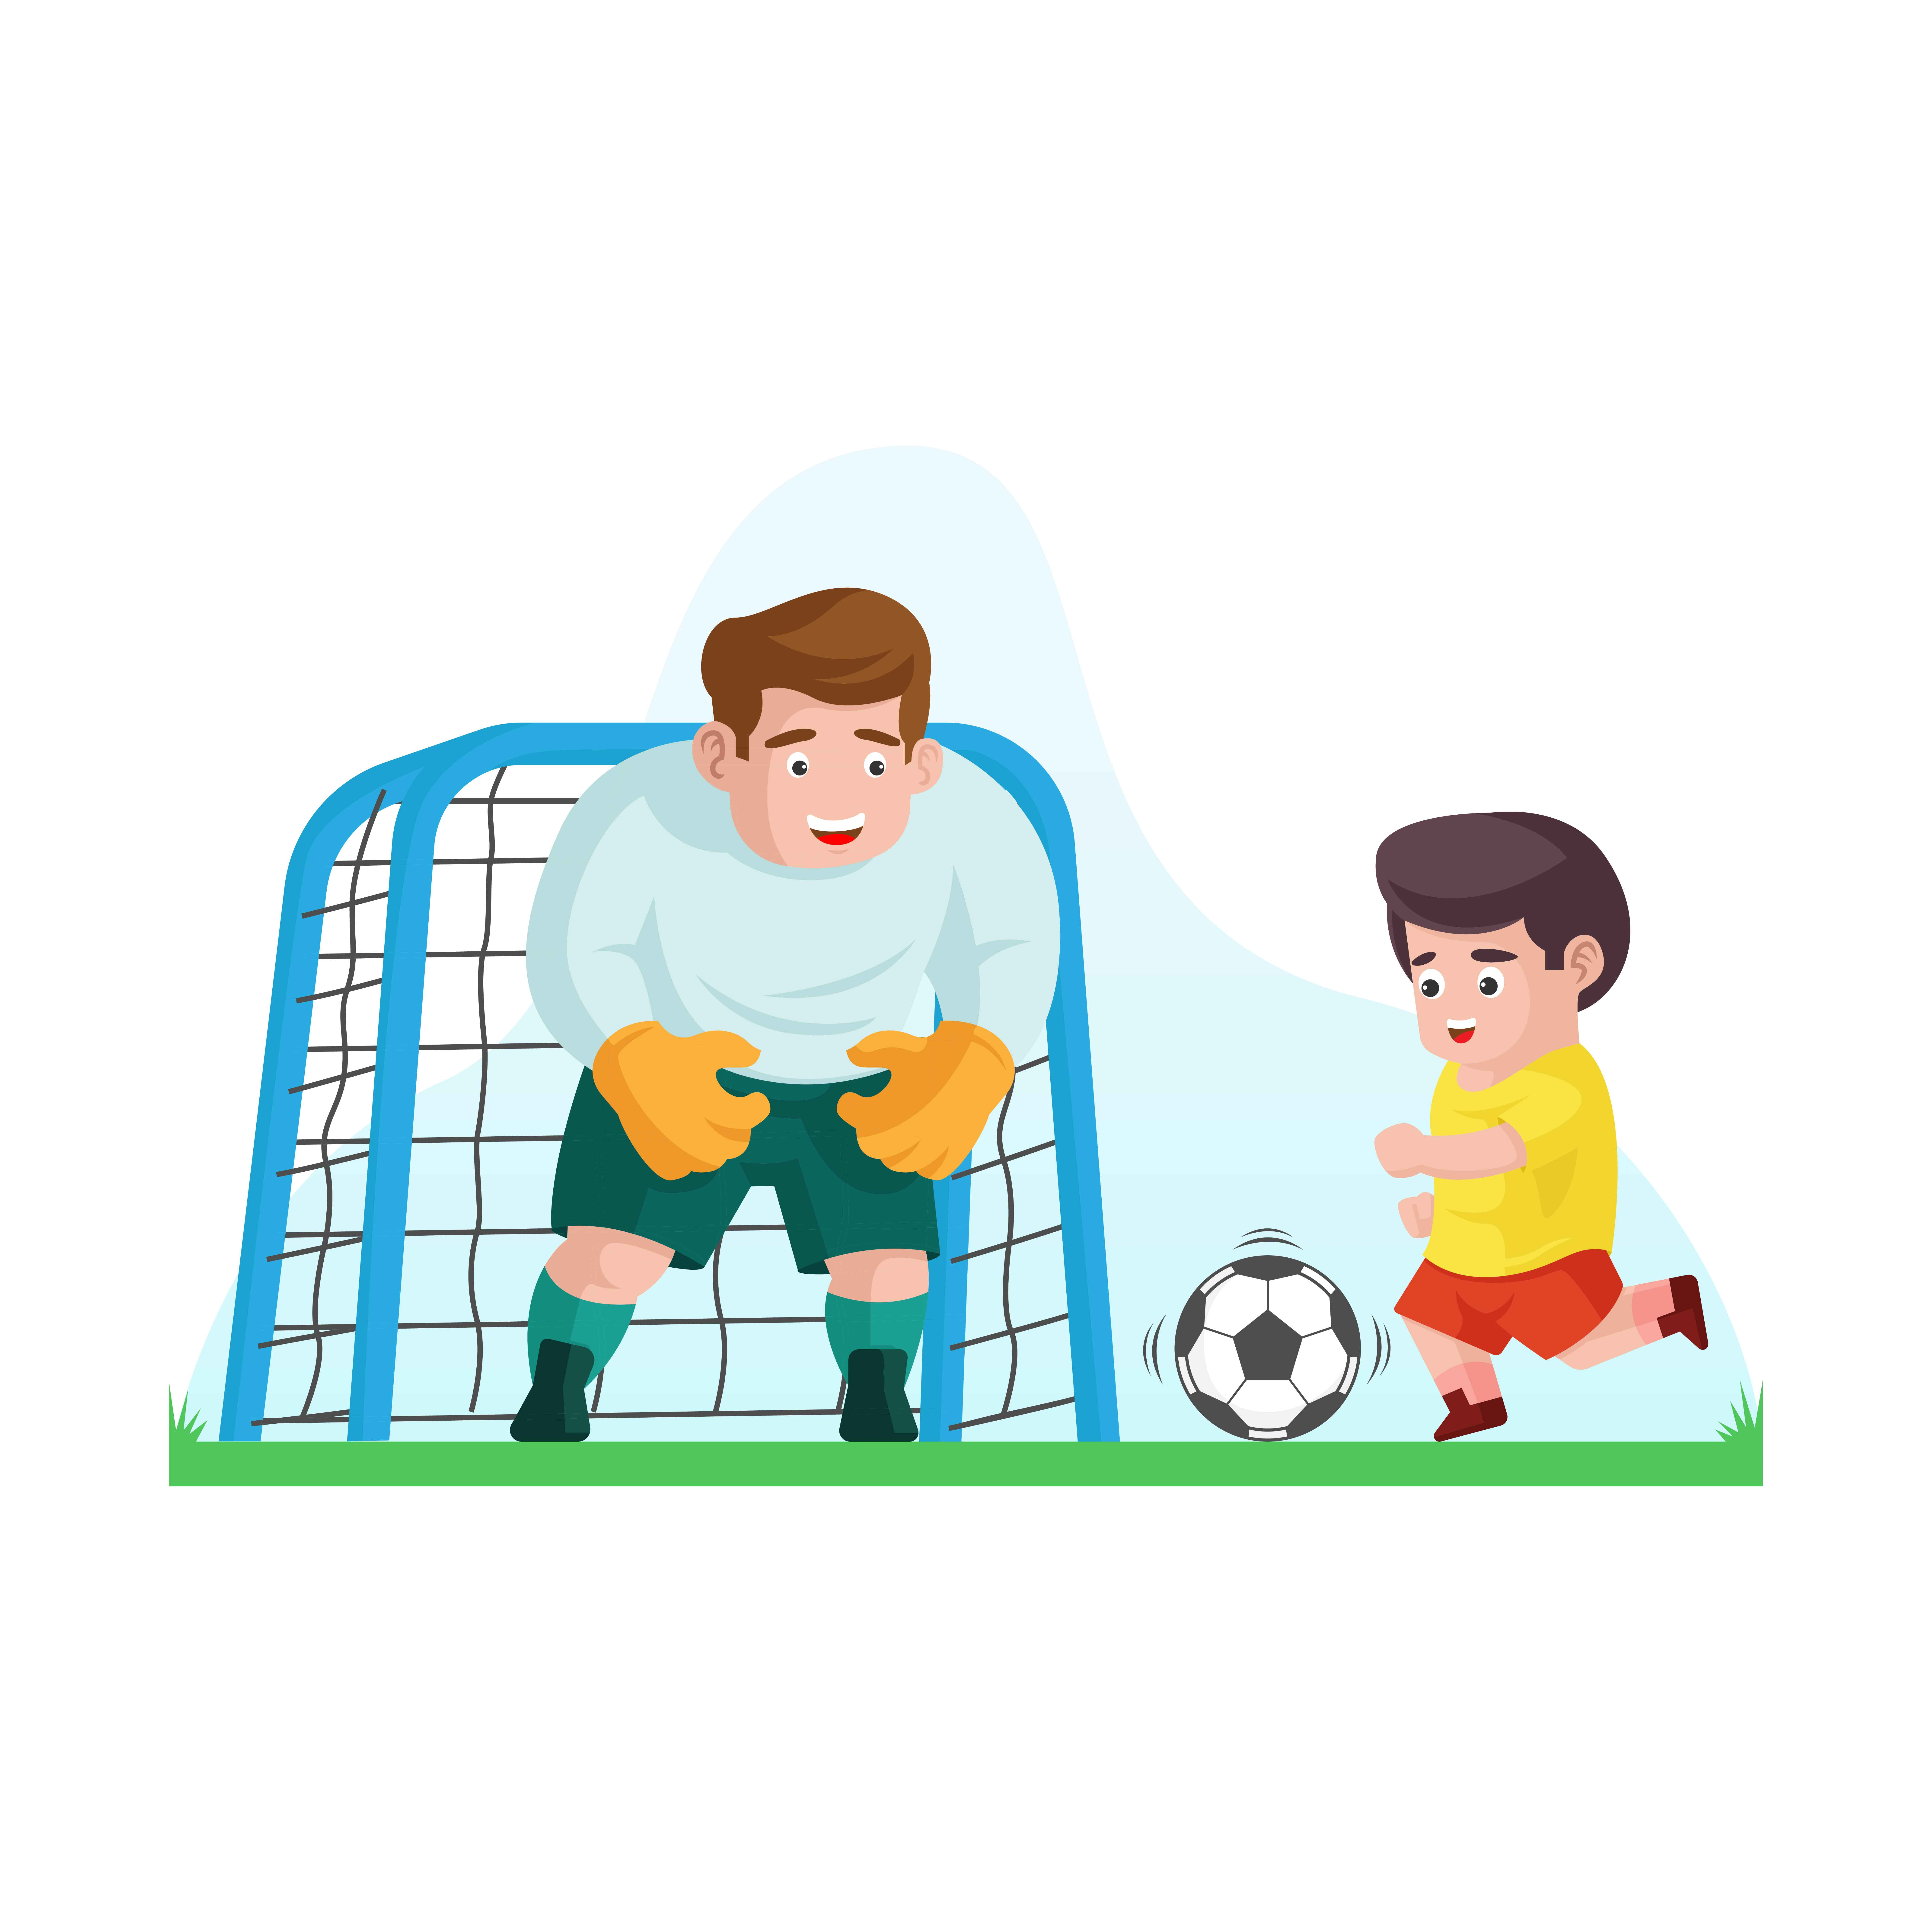 Папа играет в футбол. Футбол с папой рисунок. Папа с сыном играют в футбол. Папа с сыном играют в футбол рисунок. Отец играющий в футбол рисунок.